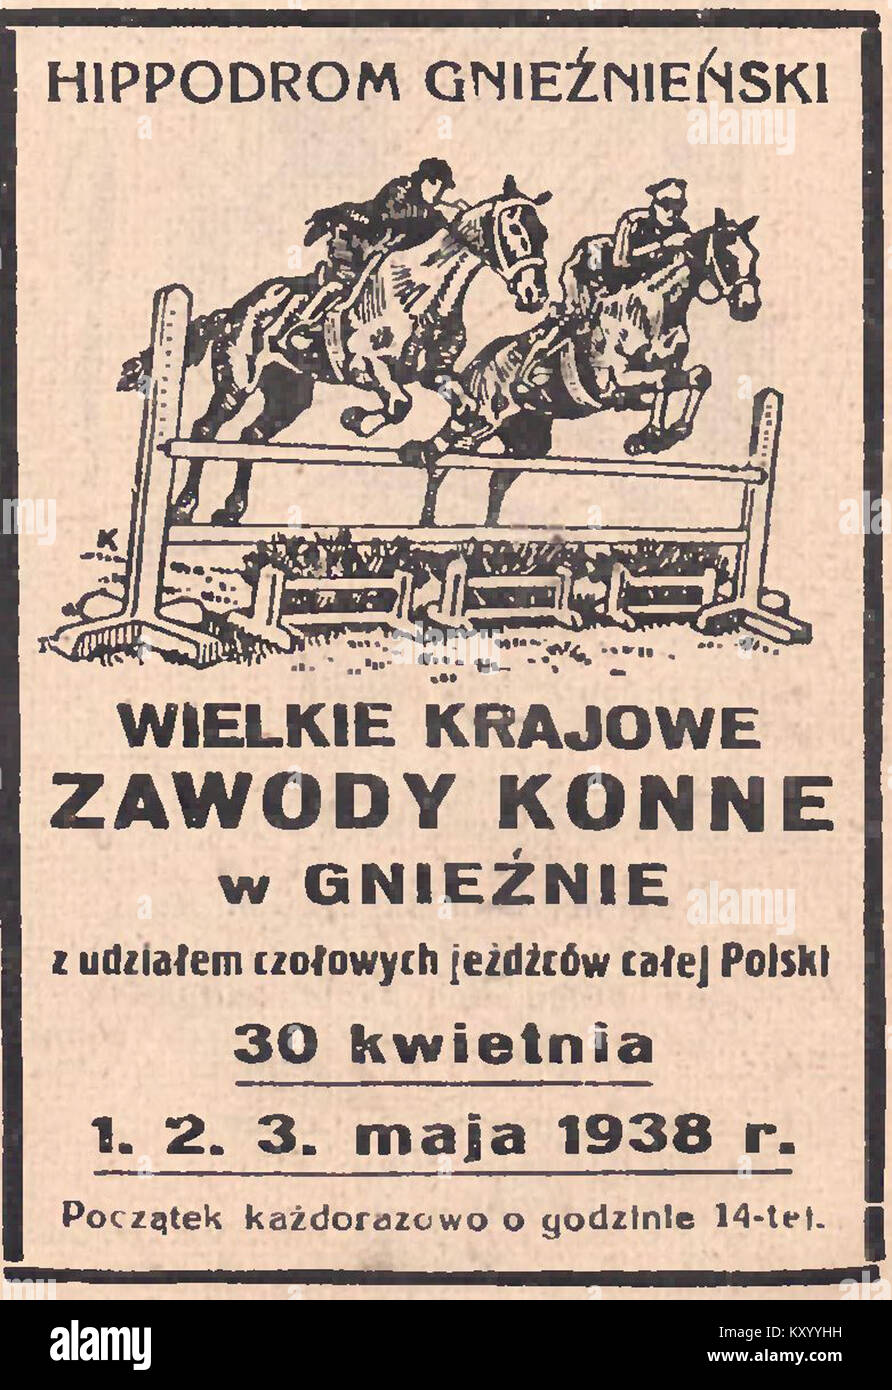 Hippodrom gnieźnieński - Wielkie zawody konne w Gnieźnie, 1938 Stock Photo